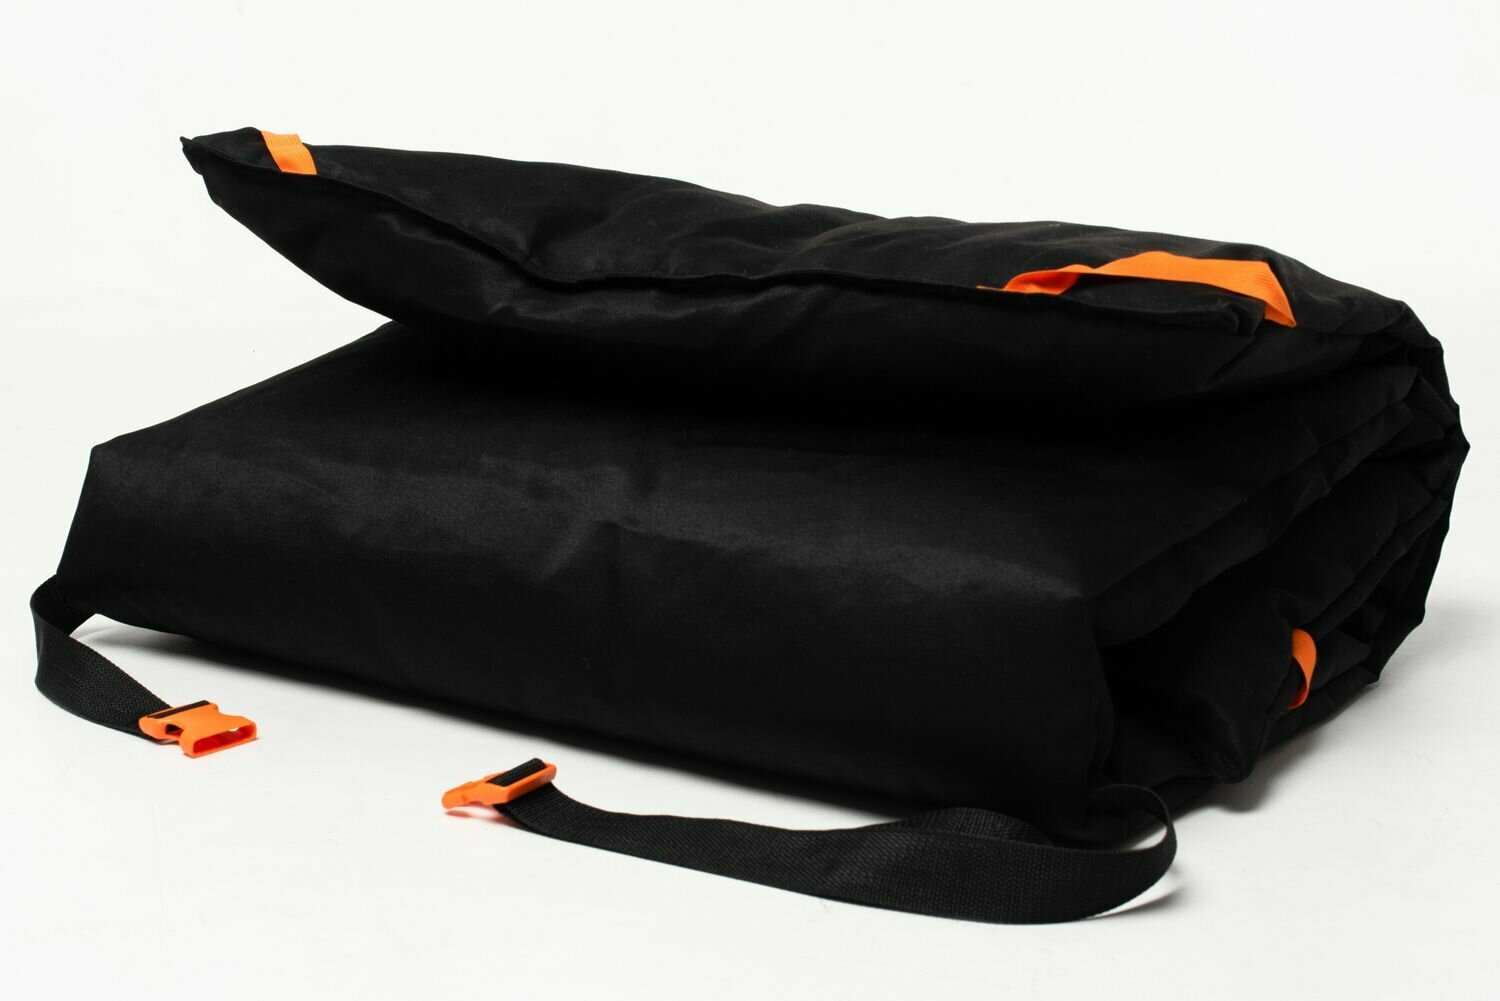 Теплая накидка-матрац "6 углов" 200/70 см, черно-оранжевый, на раскладушку, туристическую кровать